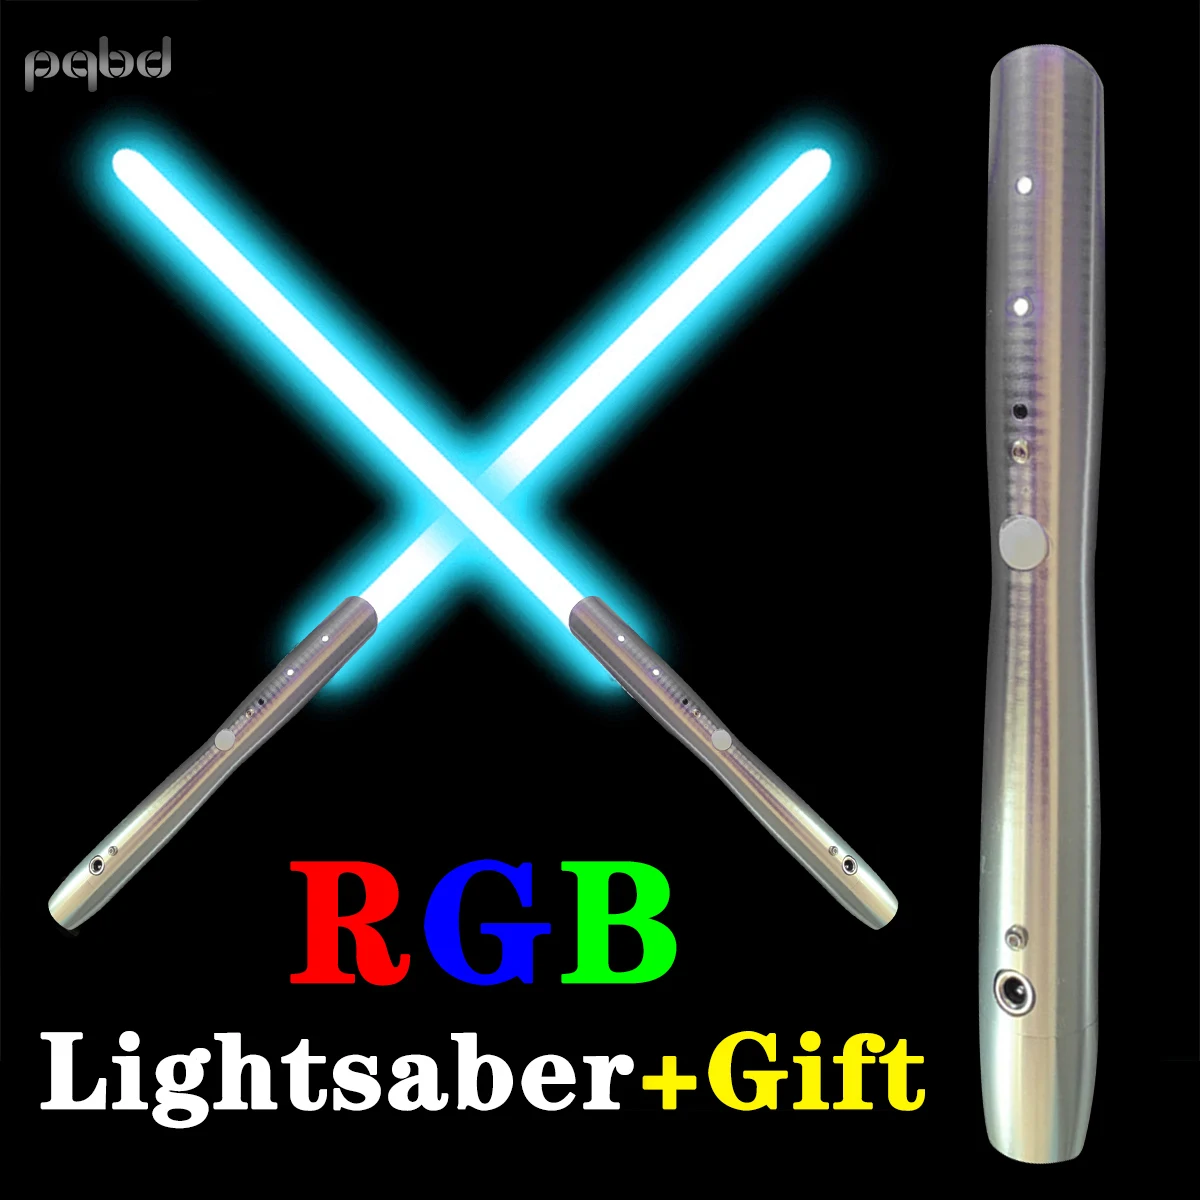 Световой меч pqbd джедая Sith, световой меч, тенсветильник, яркий световой меч, тяжелая дуэль, металлический лазерный меч, детская светящаяся иг...